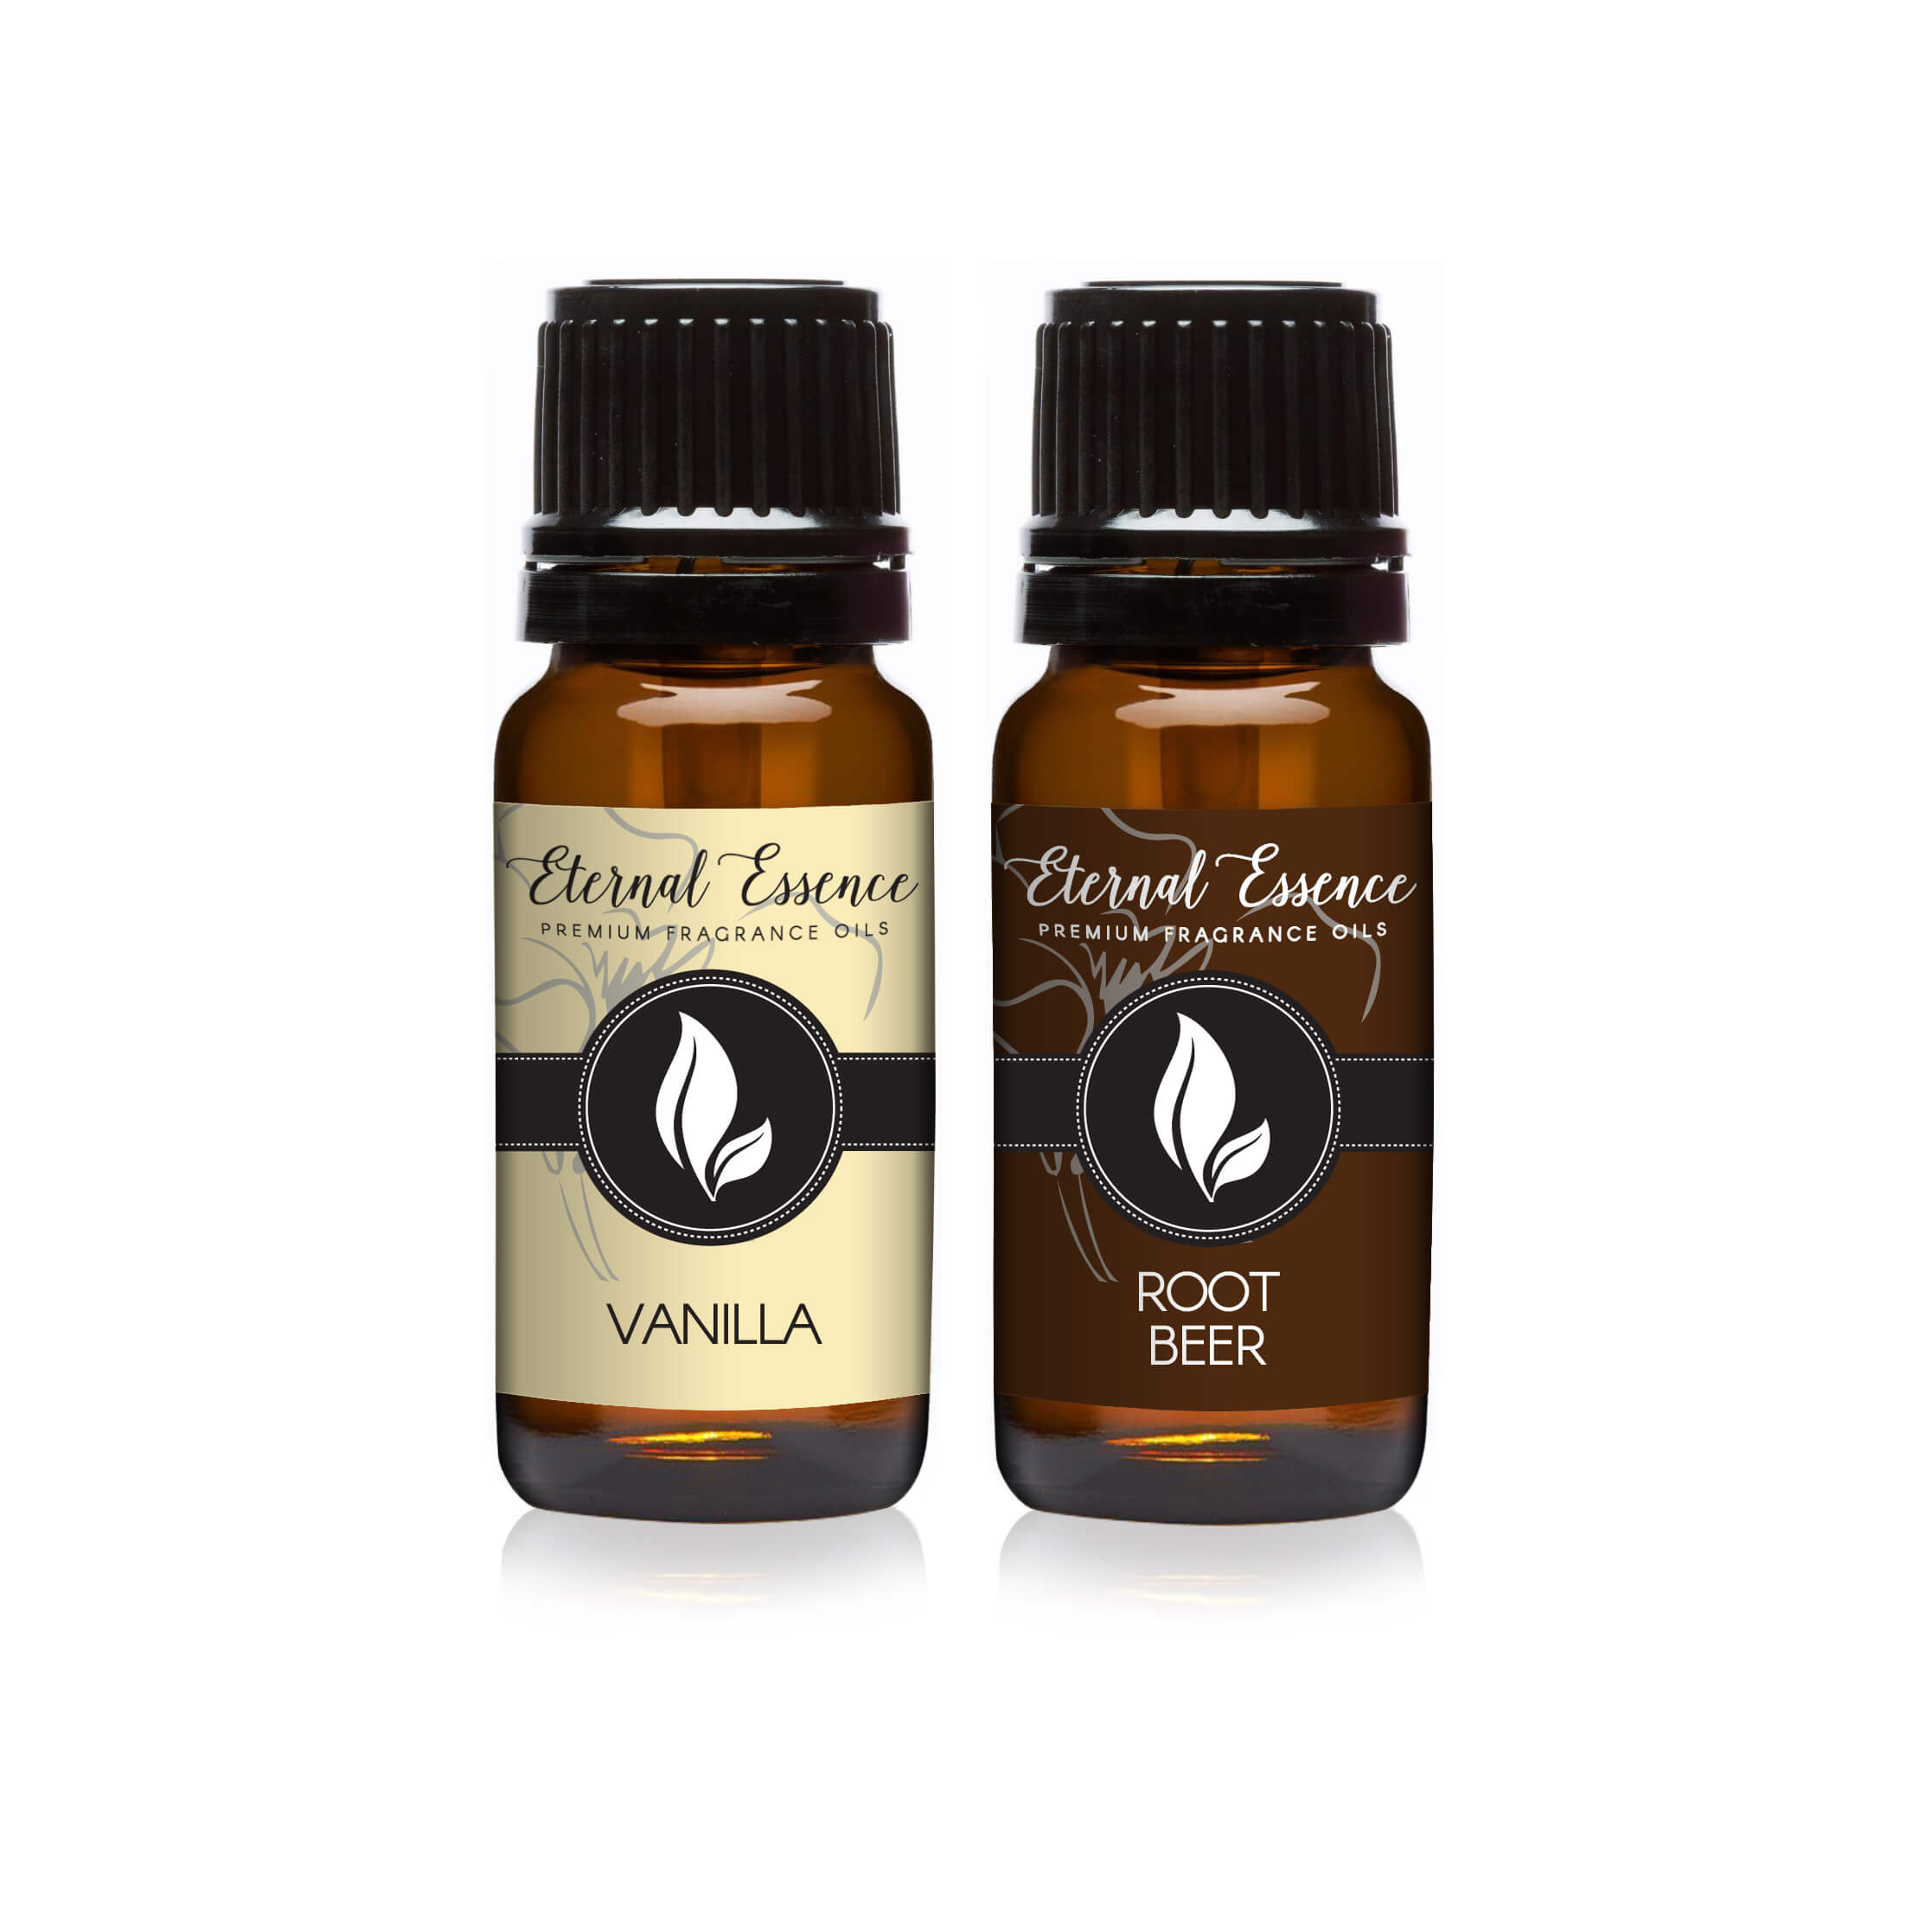 Pair (2) - Vanilla & Root Beer - Premium Fragrance Oil Pair - 10ML by Eternal Essence Oils